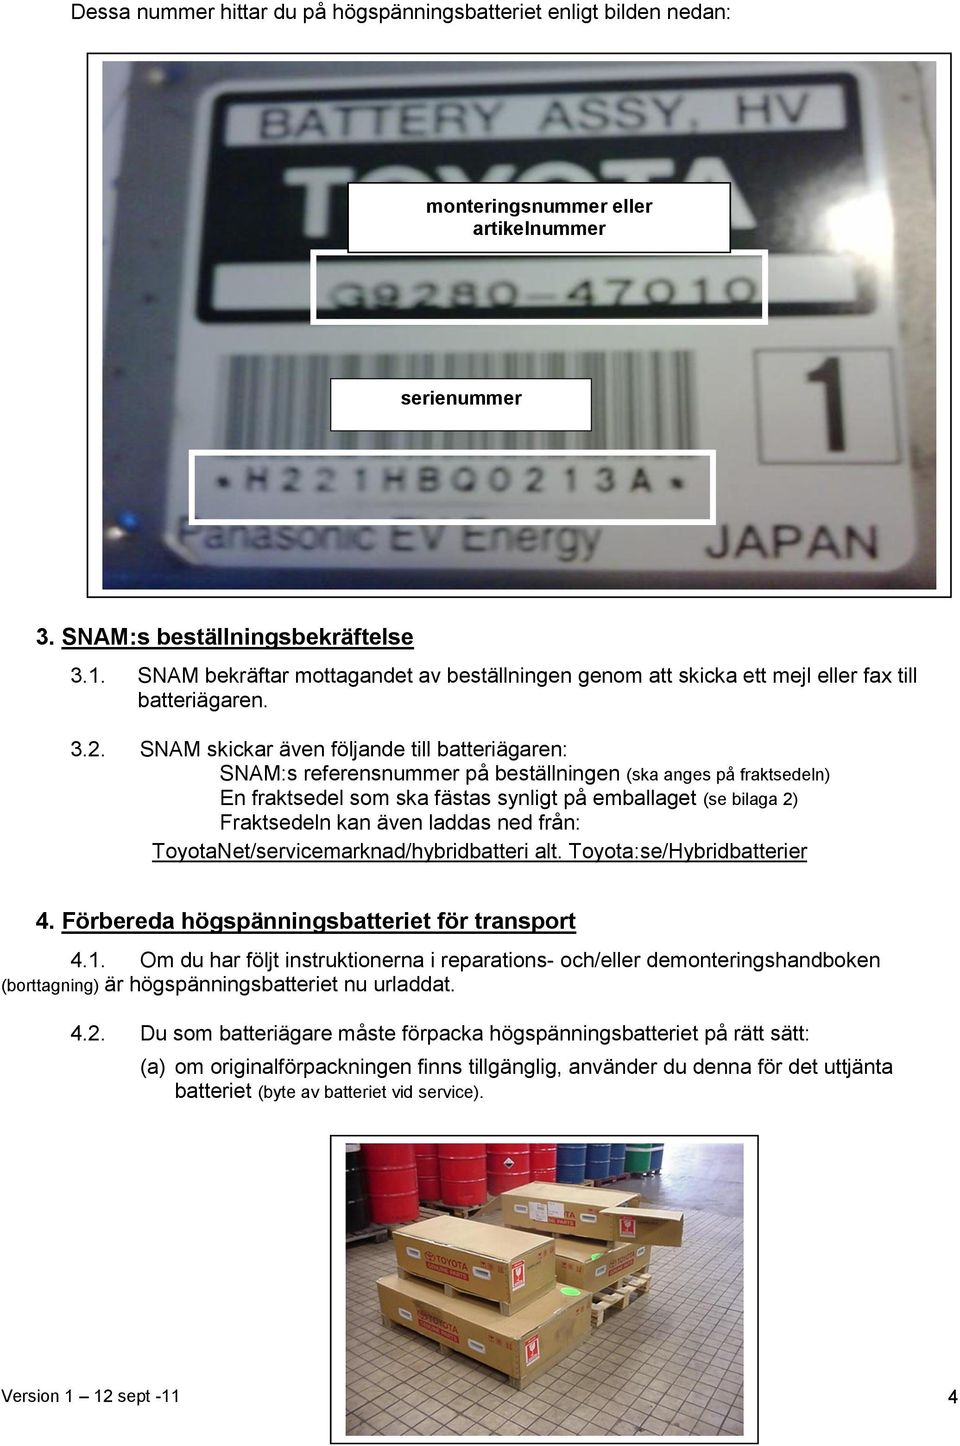 SNAM skickar även följande till batteriägaren: SNAM:s referensnummer på beställningen (ska anges på fraktsedeln) En fraktsedel som ska fästas synligt på emballaget (se bilaga 2) Fraktsedeln kan även